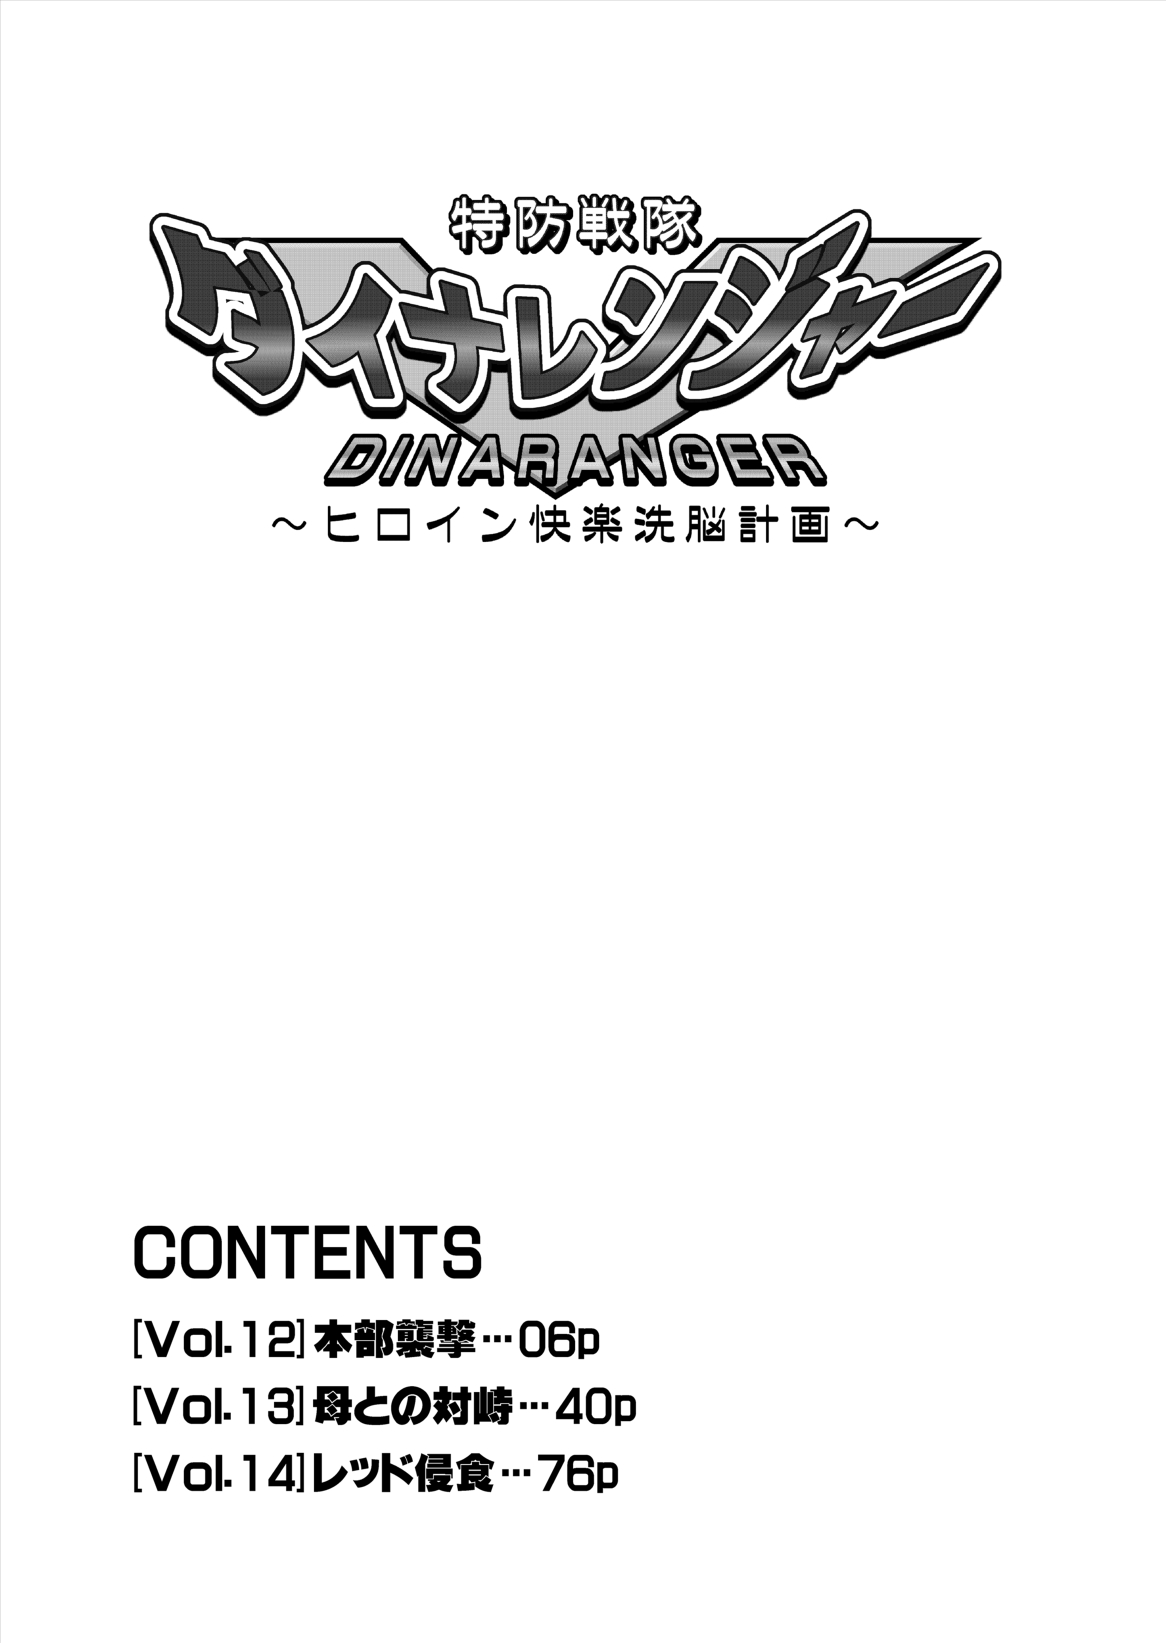 [Macxe's] Dina Ranger - Vol.12-14  [Eng] by Saha English